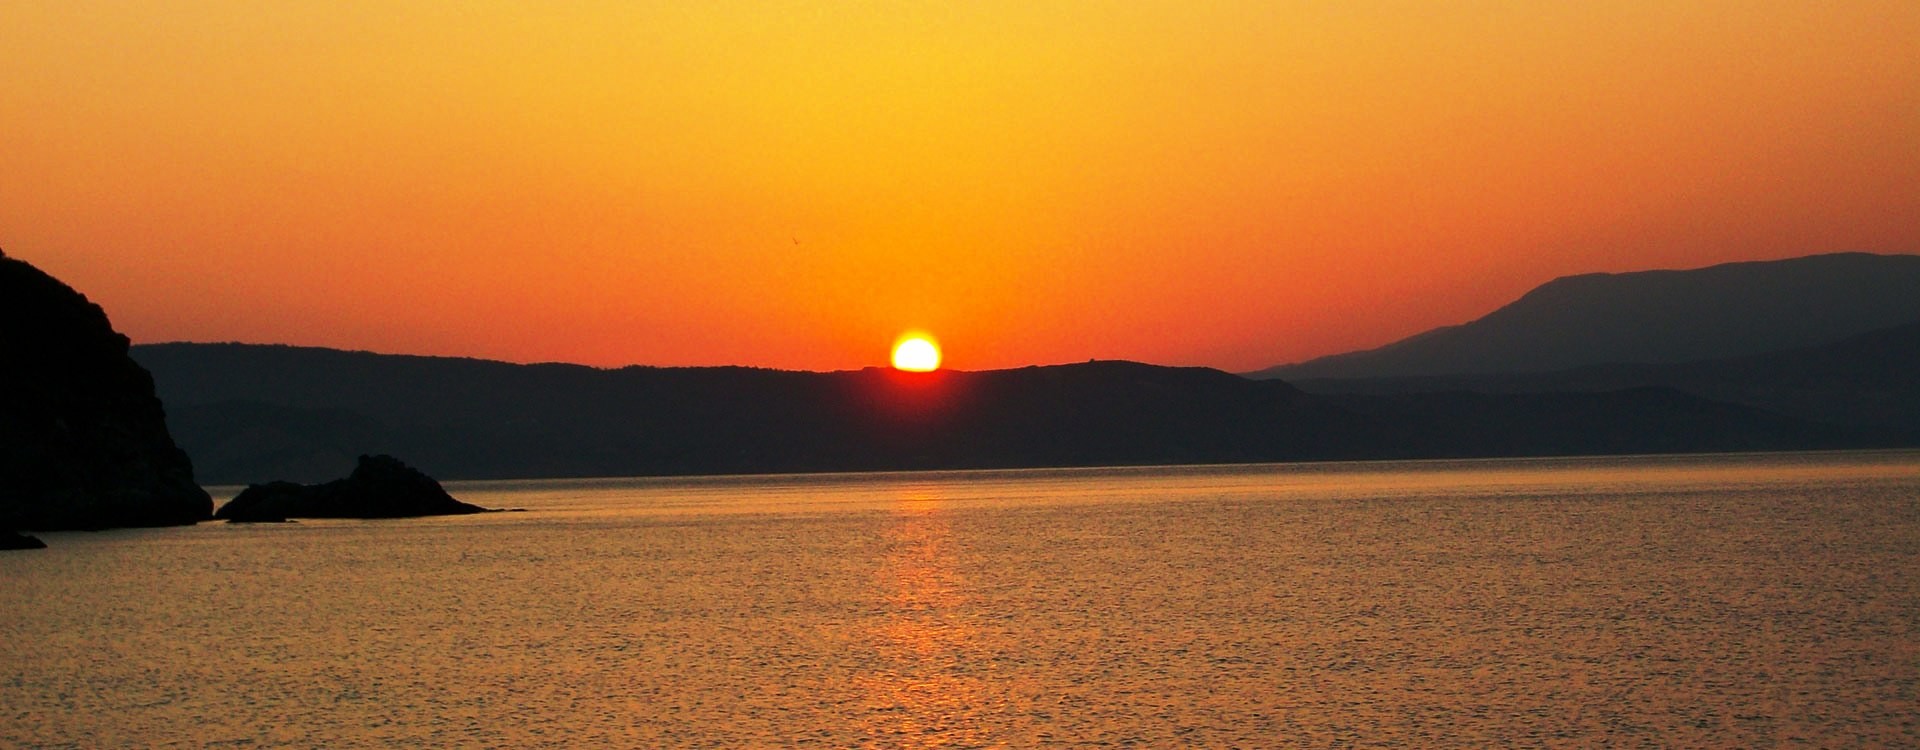 Ηλιοβασίλεμα στην παραλία Ασέληνος